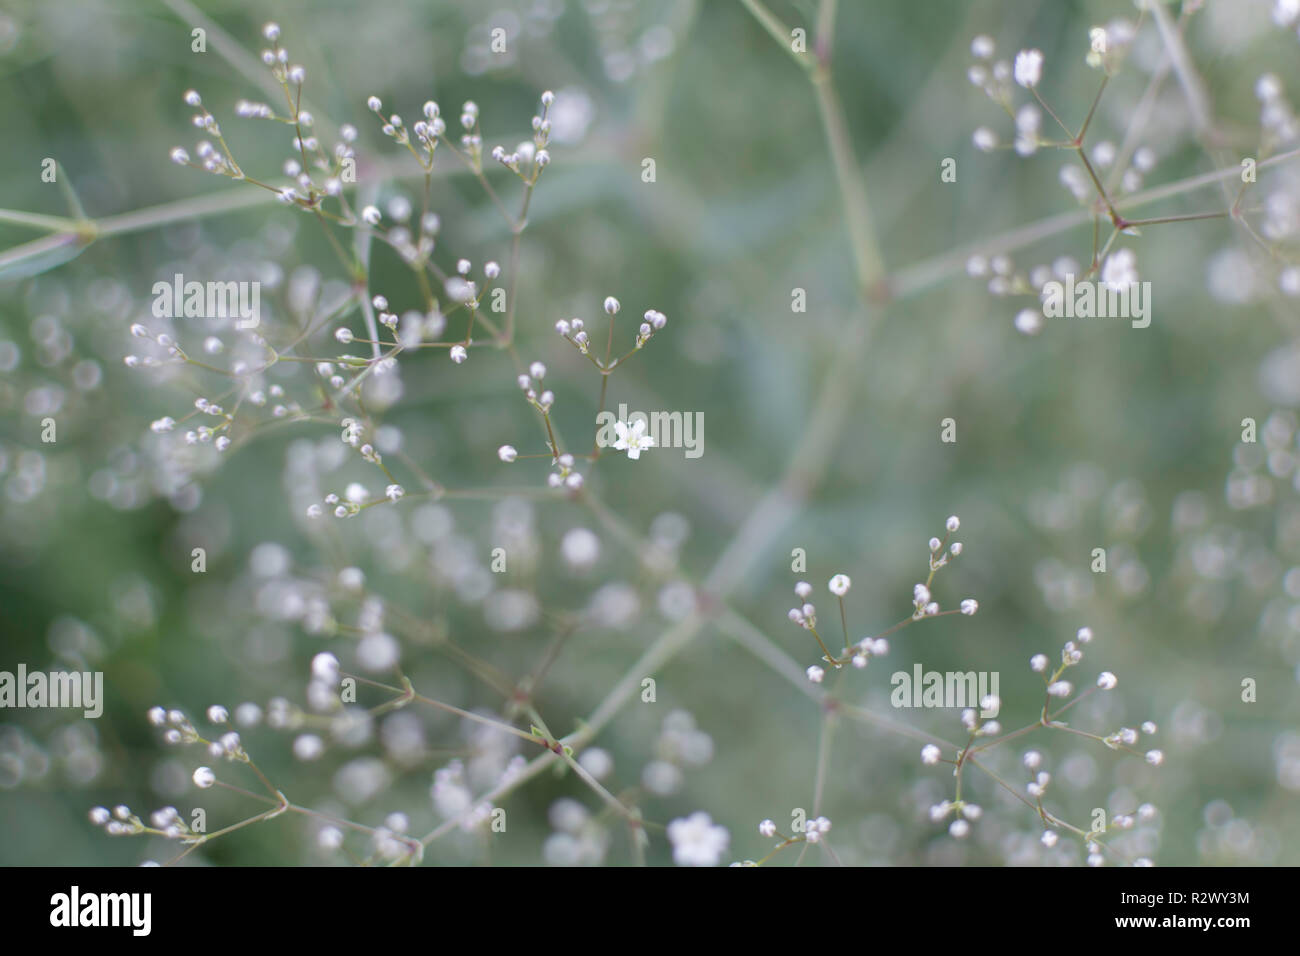 Blurry sanfte Hintergrund mit vielen weißen Baby's Atem (Gypsophila paniculata) Blumen im Garten. Natur Hintergrund mit gemeinsamen Gypsophila. Stockfoto